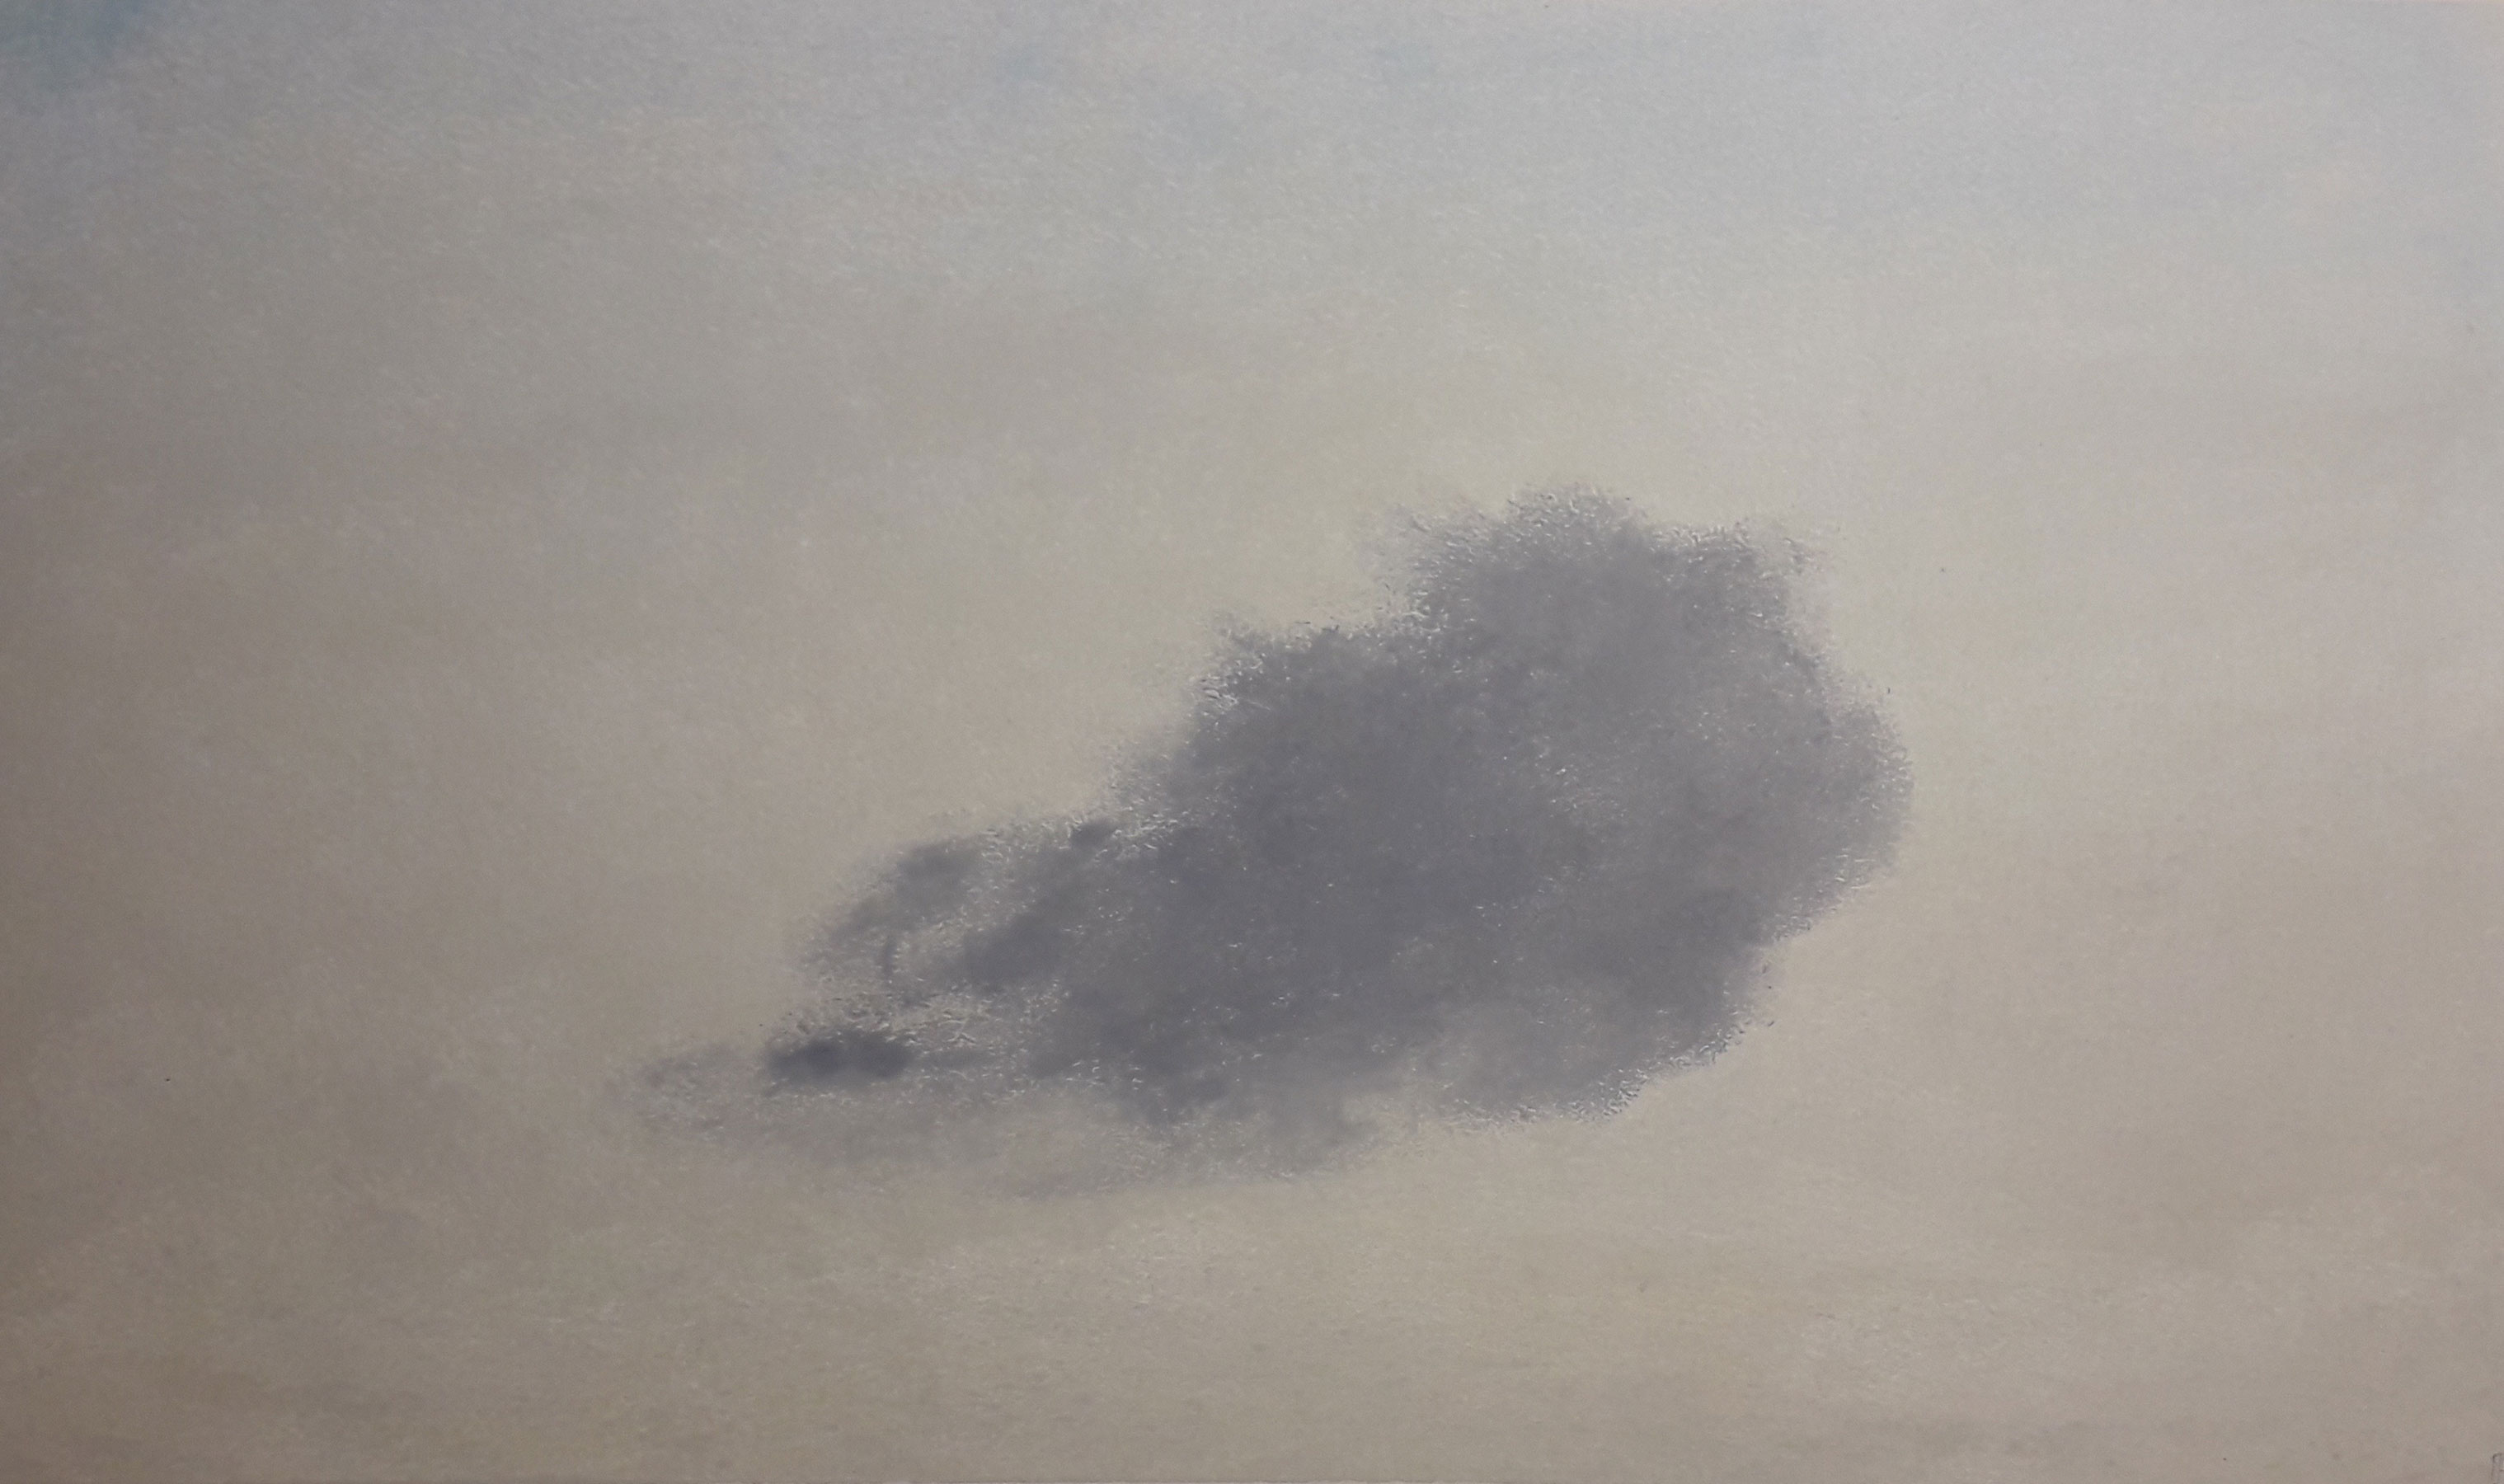 Cloud  XIX - 2019 - pastel on paper - 30x45cm. Alicia Marsans